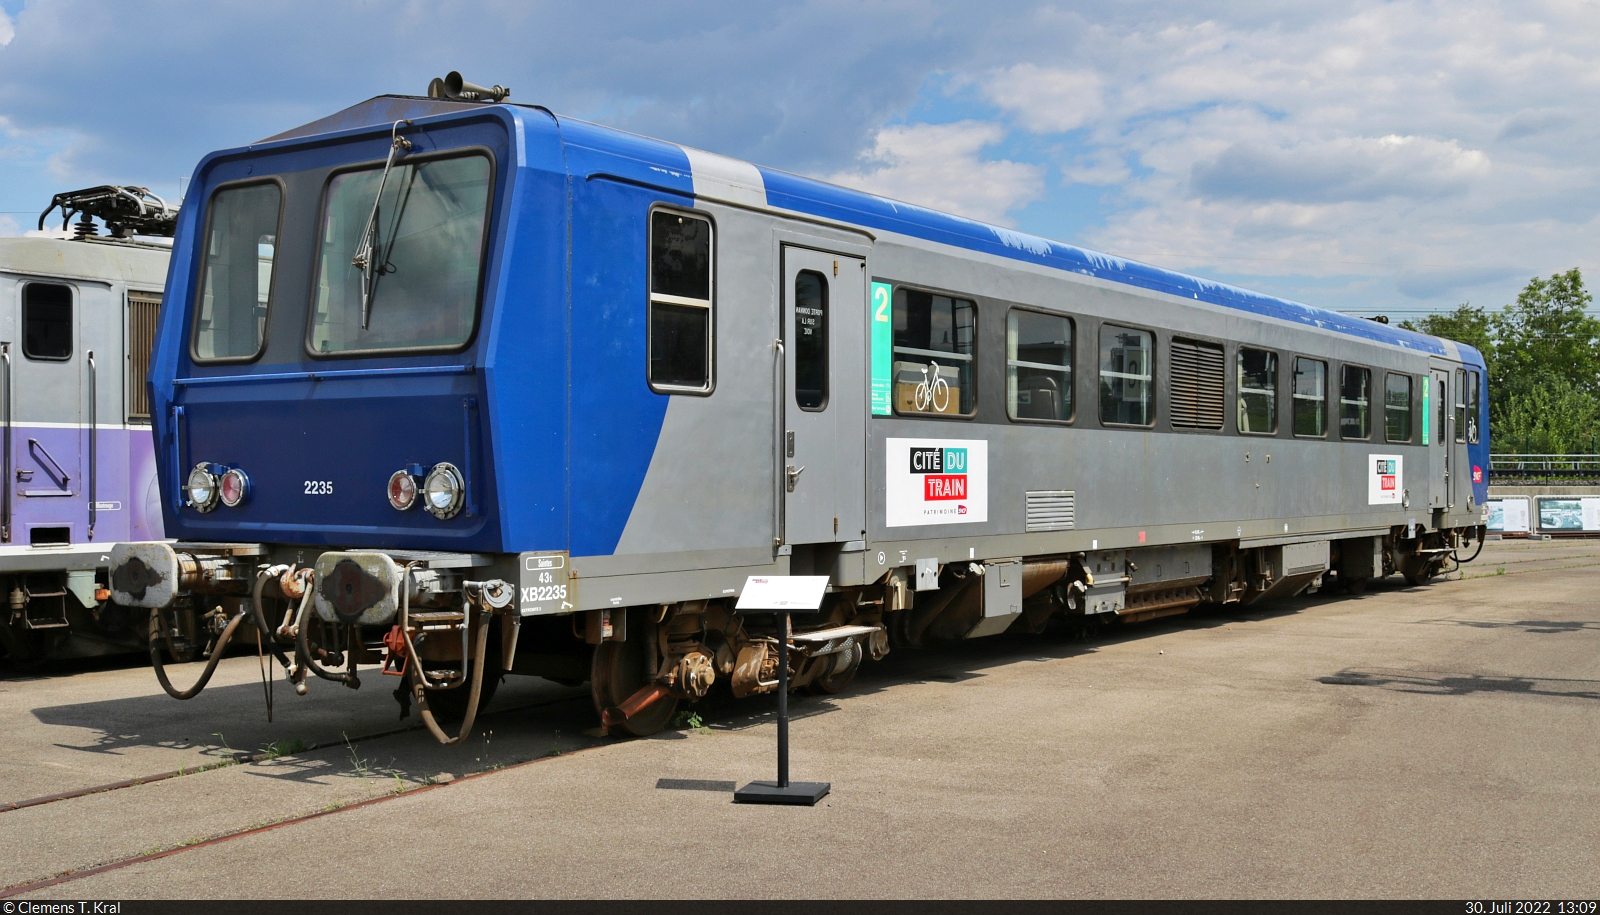 Der Dieseltriebwagen XB 2235 kann auf dem Außengelände des Cité du Train (Eisenbahnmuseum) Mulhouse (F) besichtigt werden.

🧰 Cité du Train - Patrimoine SNCF
🕓 30.7.2022 | 13:09 Uhr